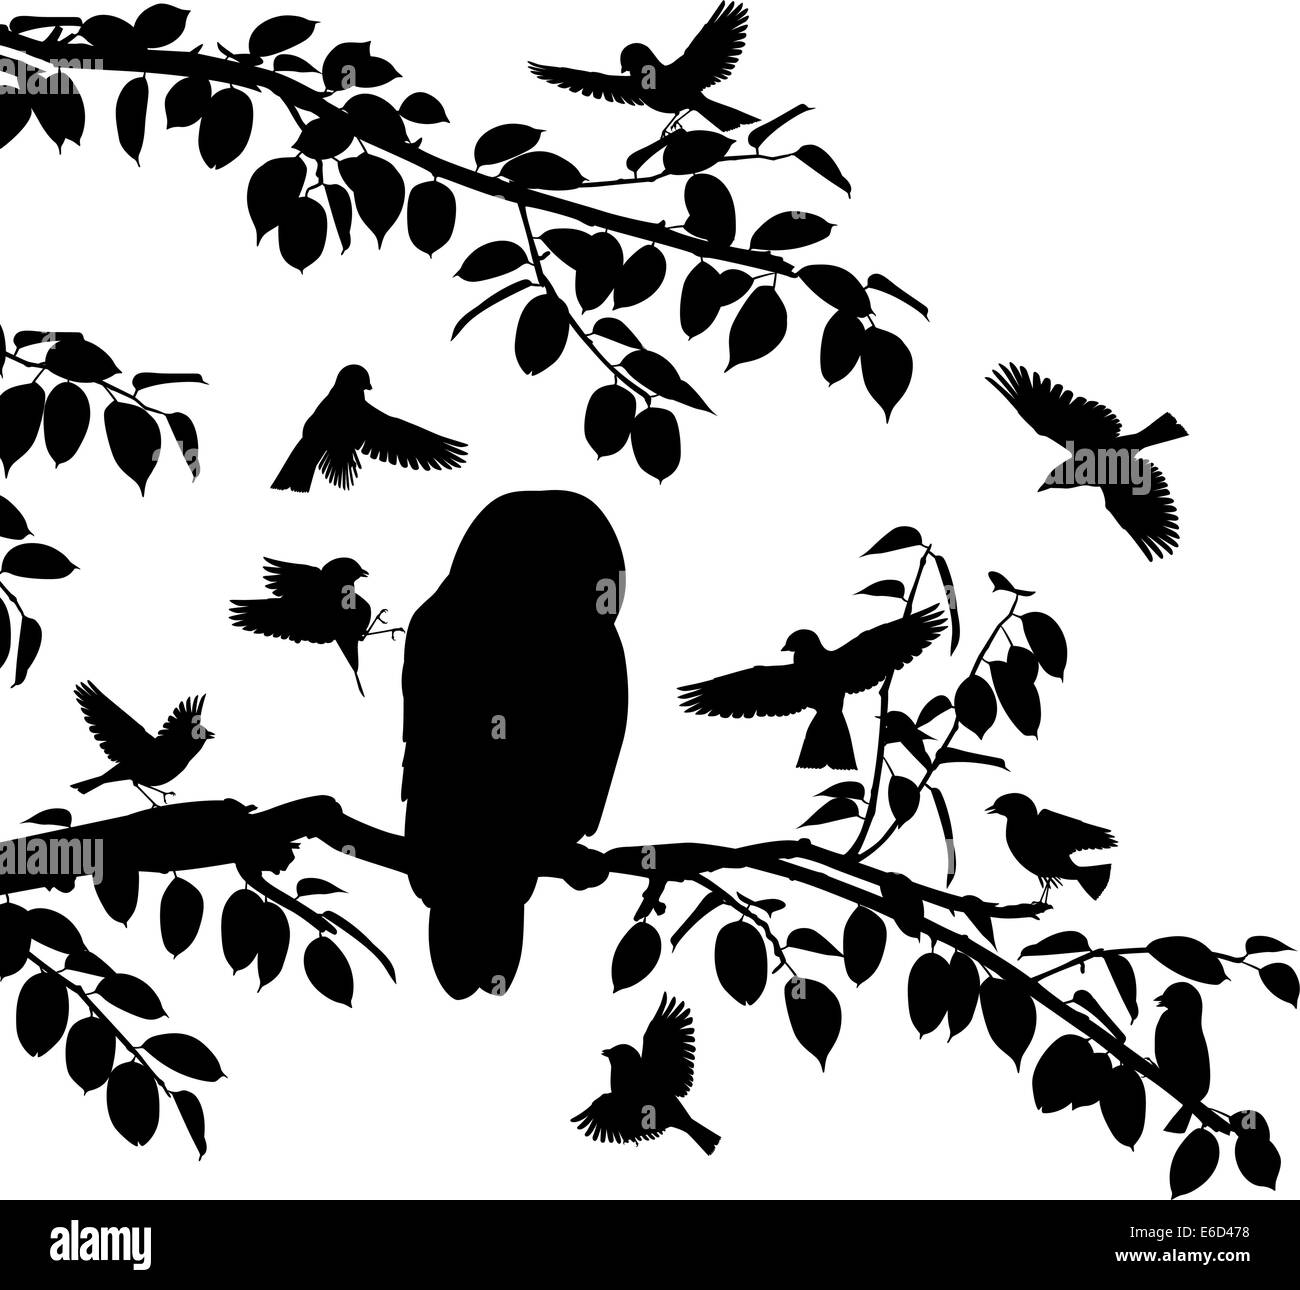 Siluetas vectorial editable de aves canoras mobbing una lechuza con todas las aves como objetos separados Ilustración del Vector